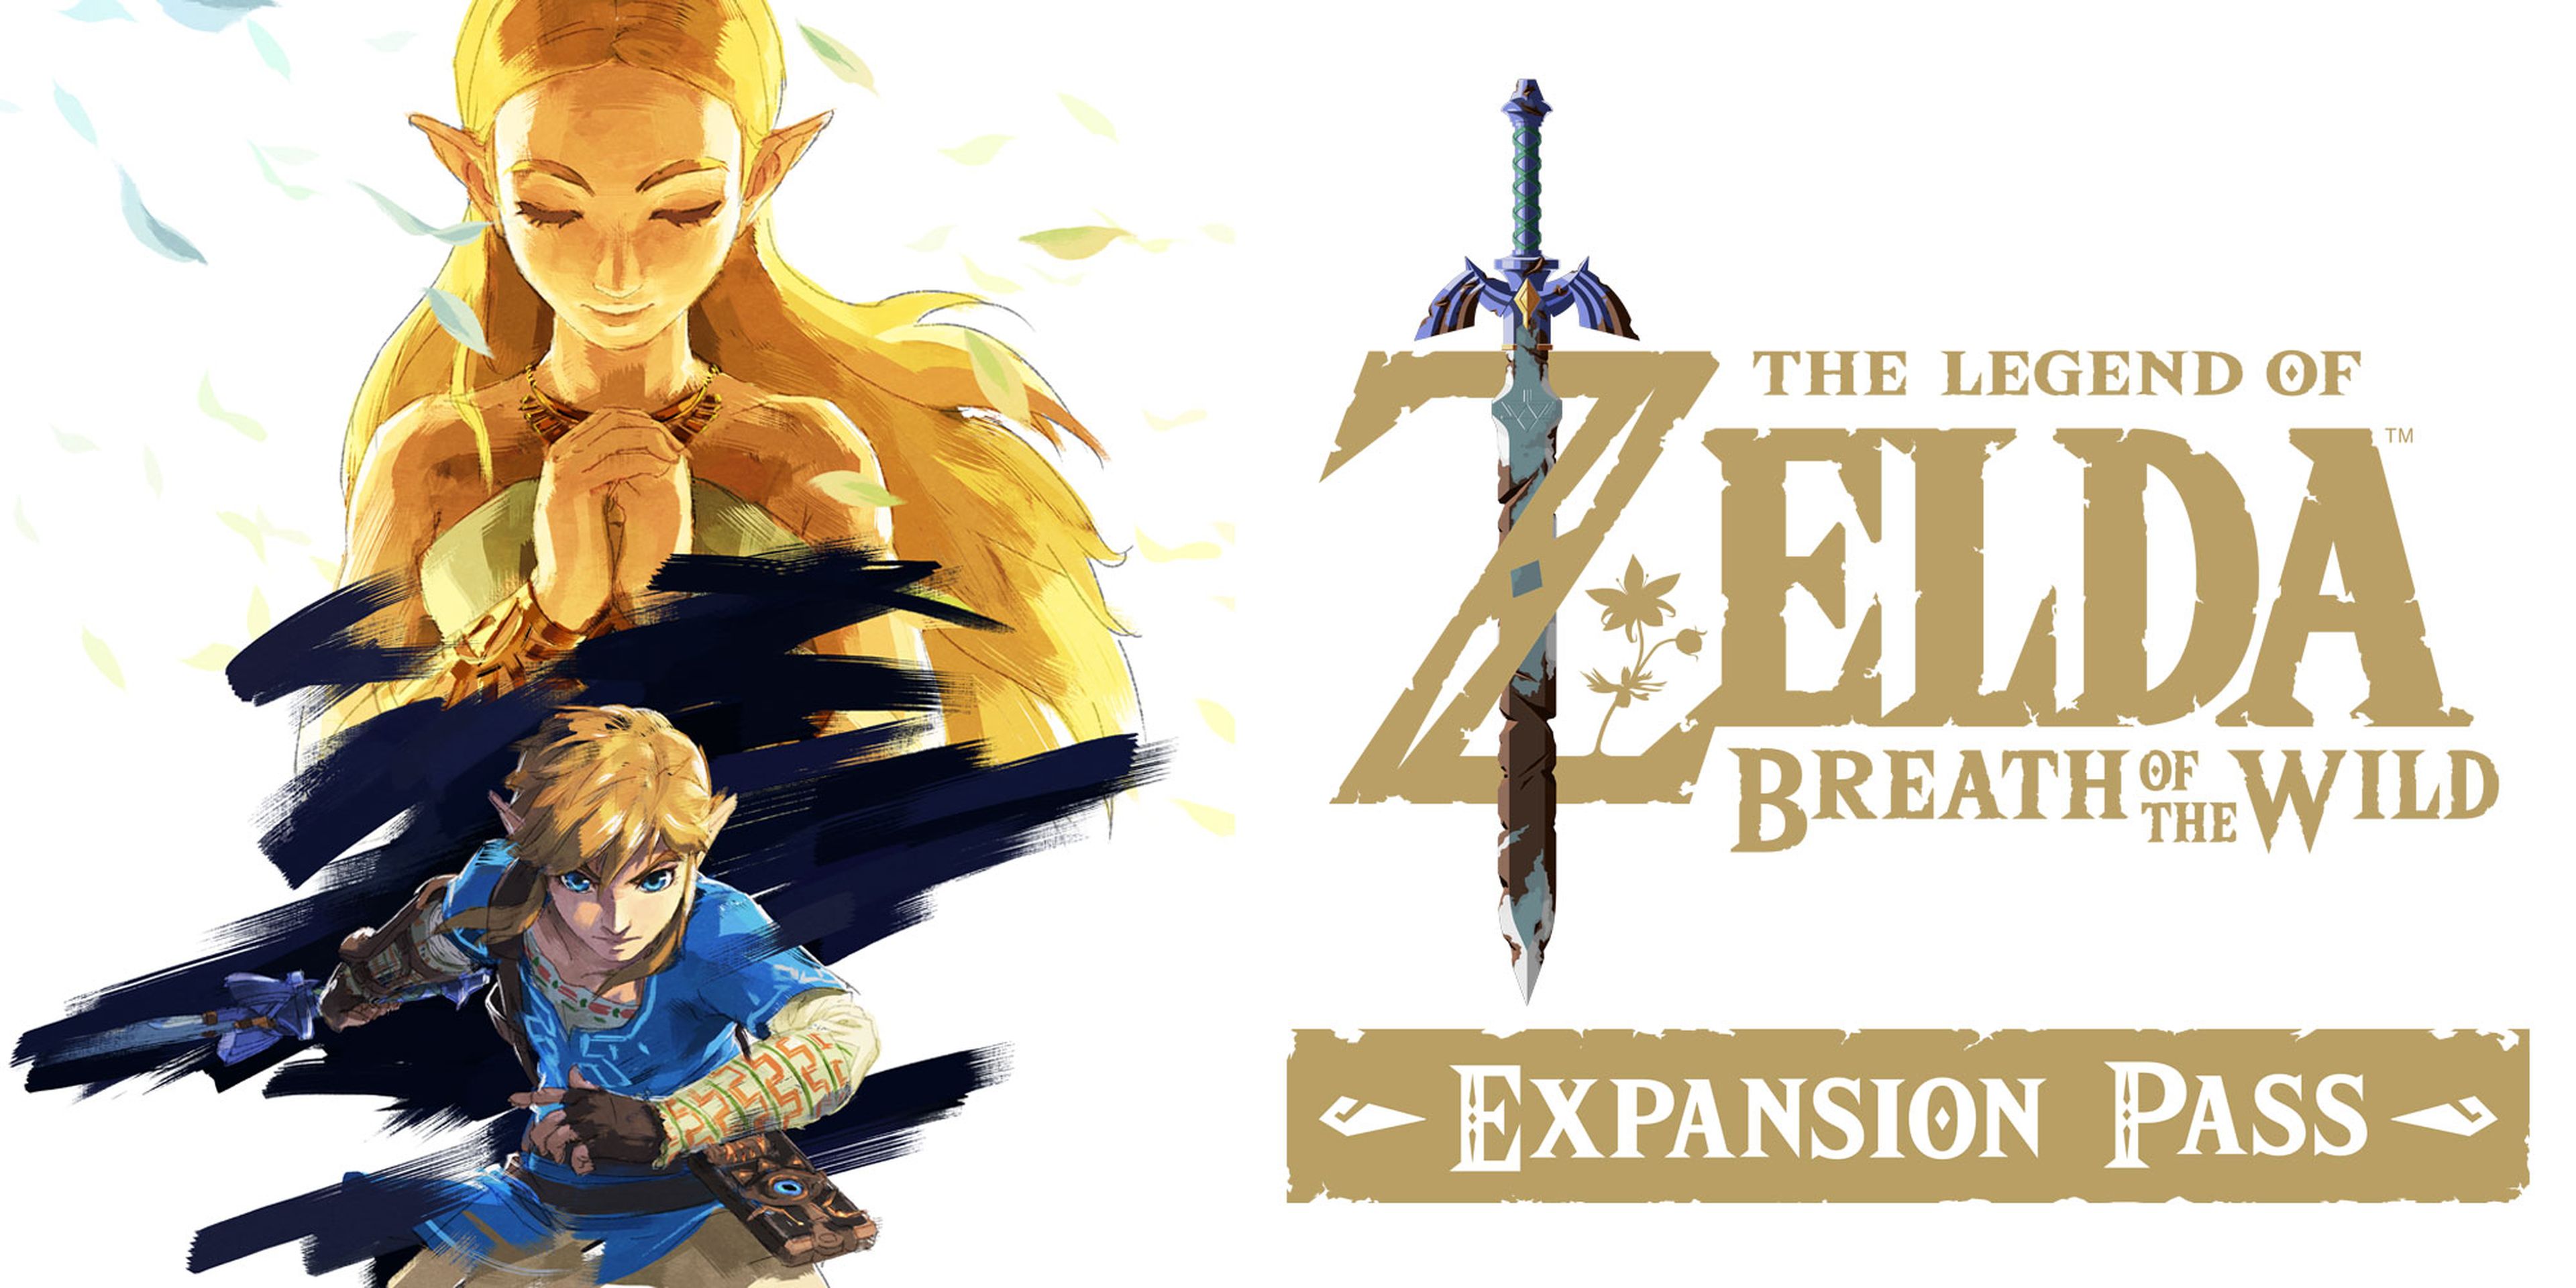 Zelda Breath of the Wild - The Master Trials DLC